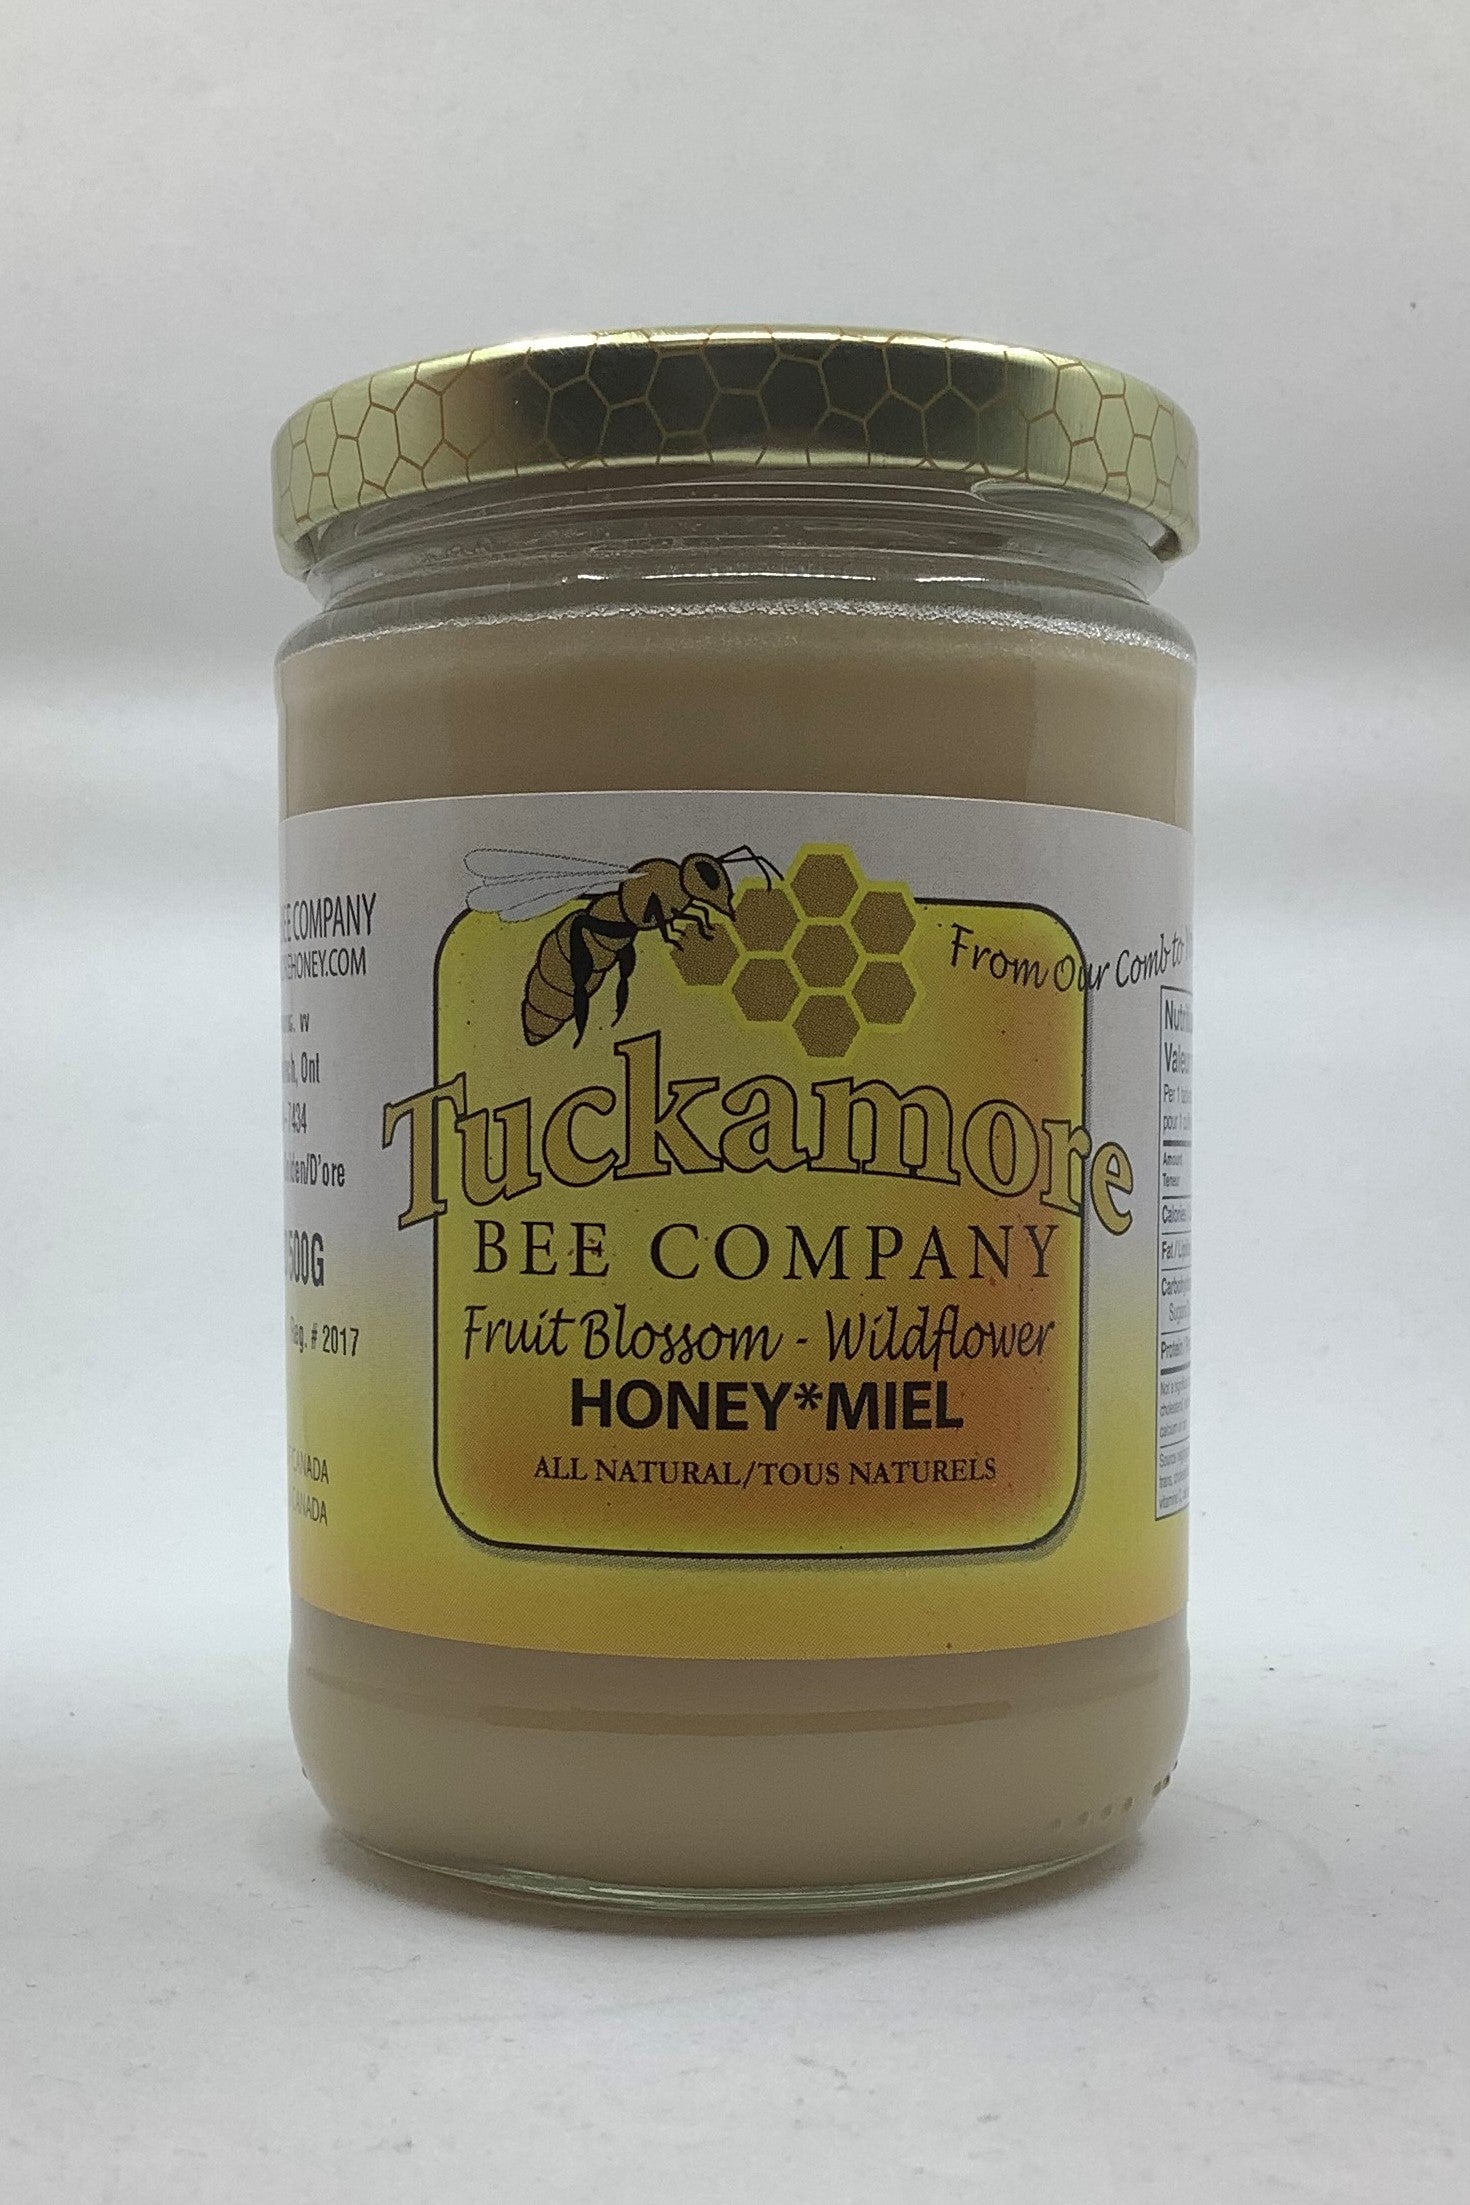 Tuckamore Bee Company - CHURNED Fruit Blossom Honey